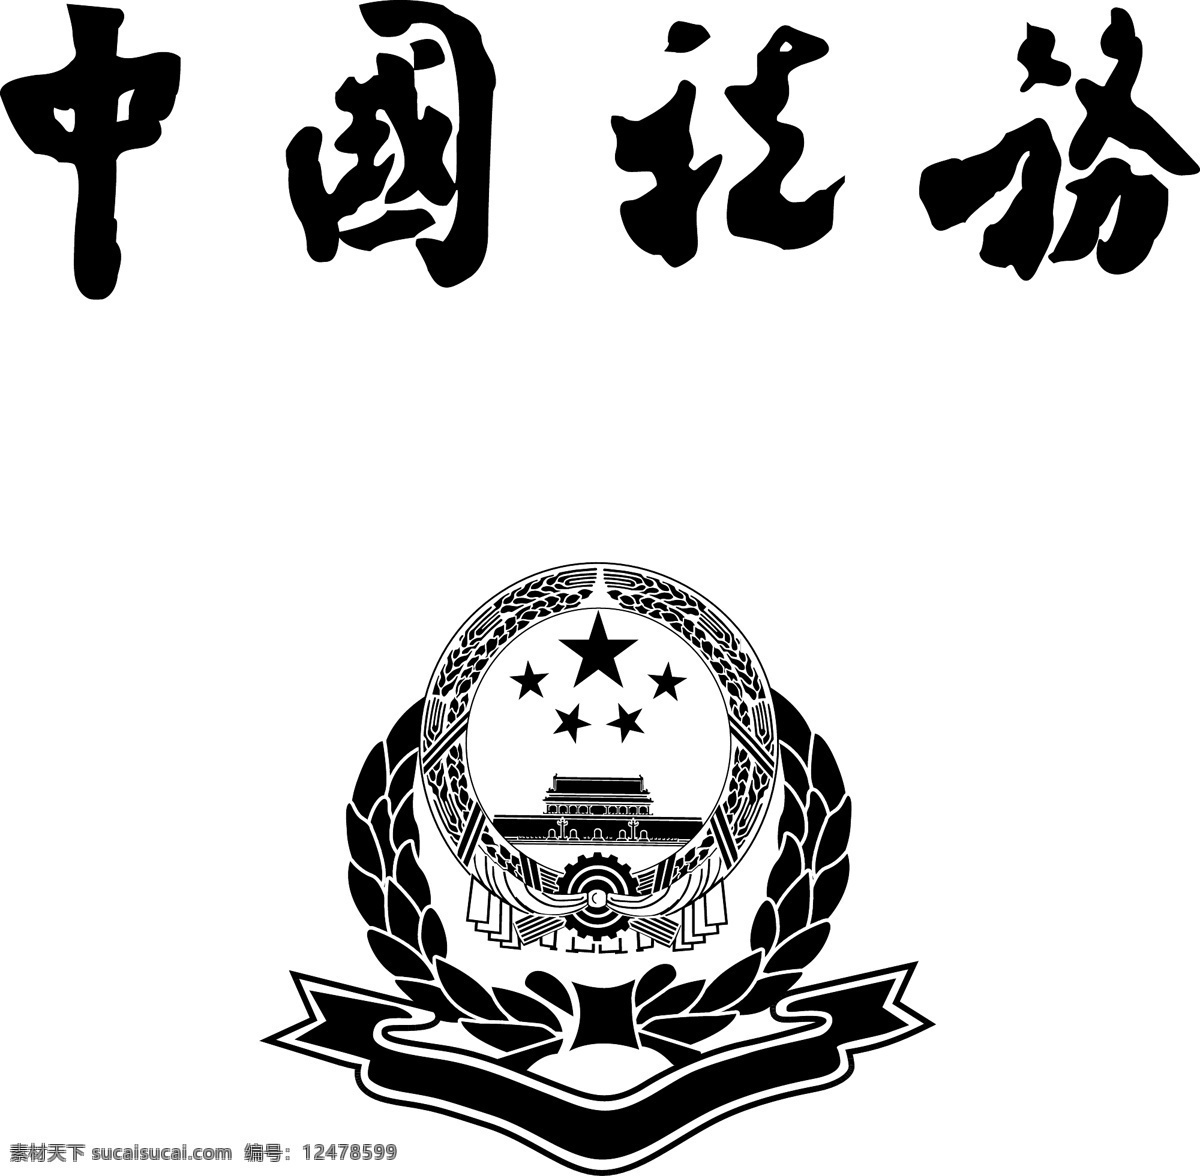 中国税务标志 中国 税务 标志 logo 源文件 国税局 办税大厅 税务标志 标志图标 公共标识标志